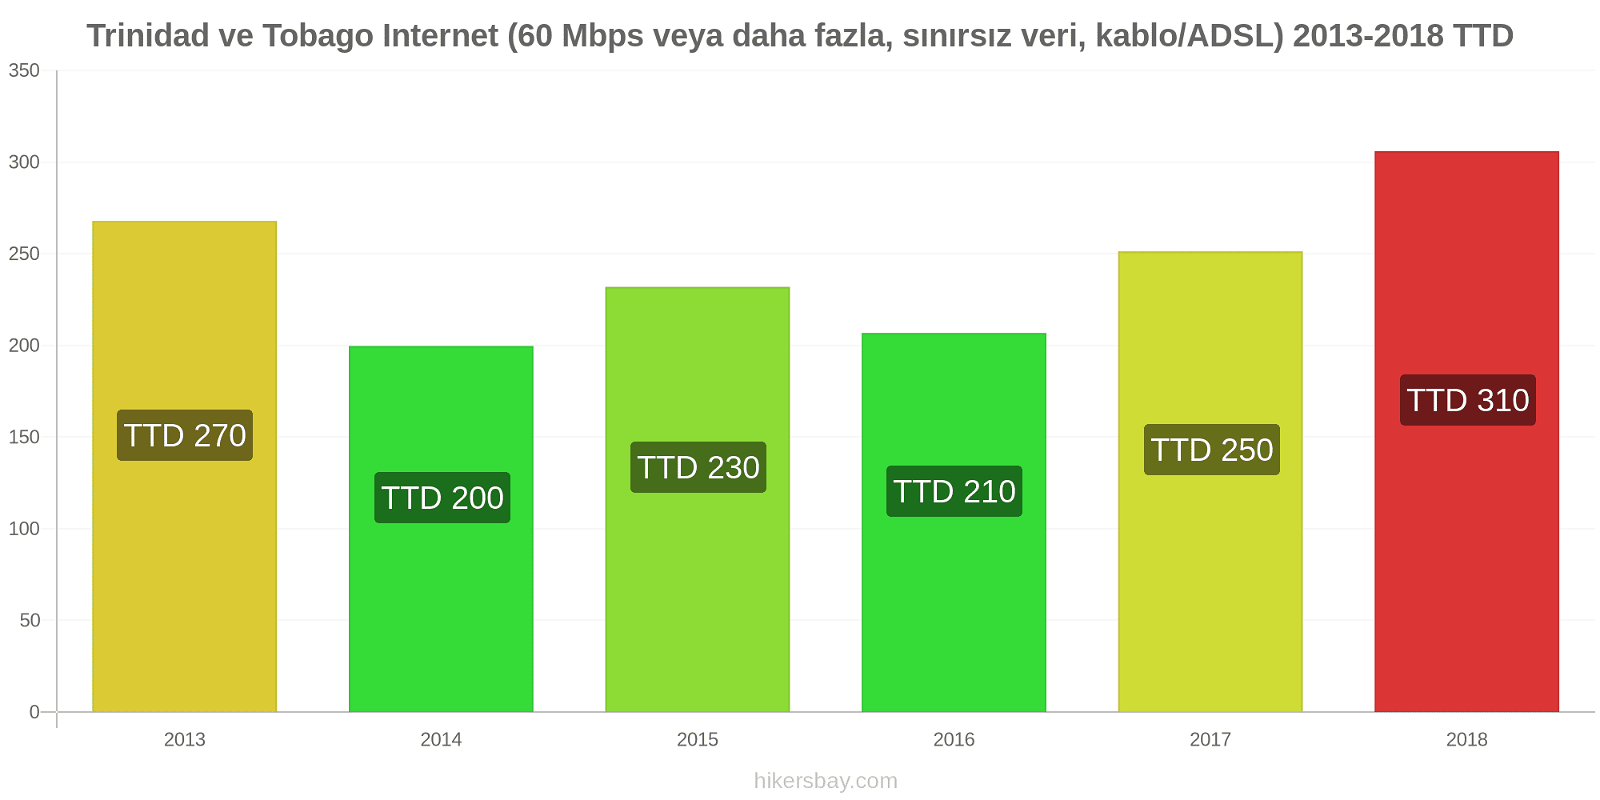 Trinidad ve Tobago fiyat değişiklikleri İnternet (60 Mbps veya daha fazla, sınırsız veri, kablo/ADSL) hikersbay.com